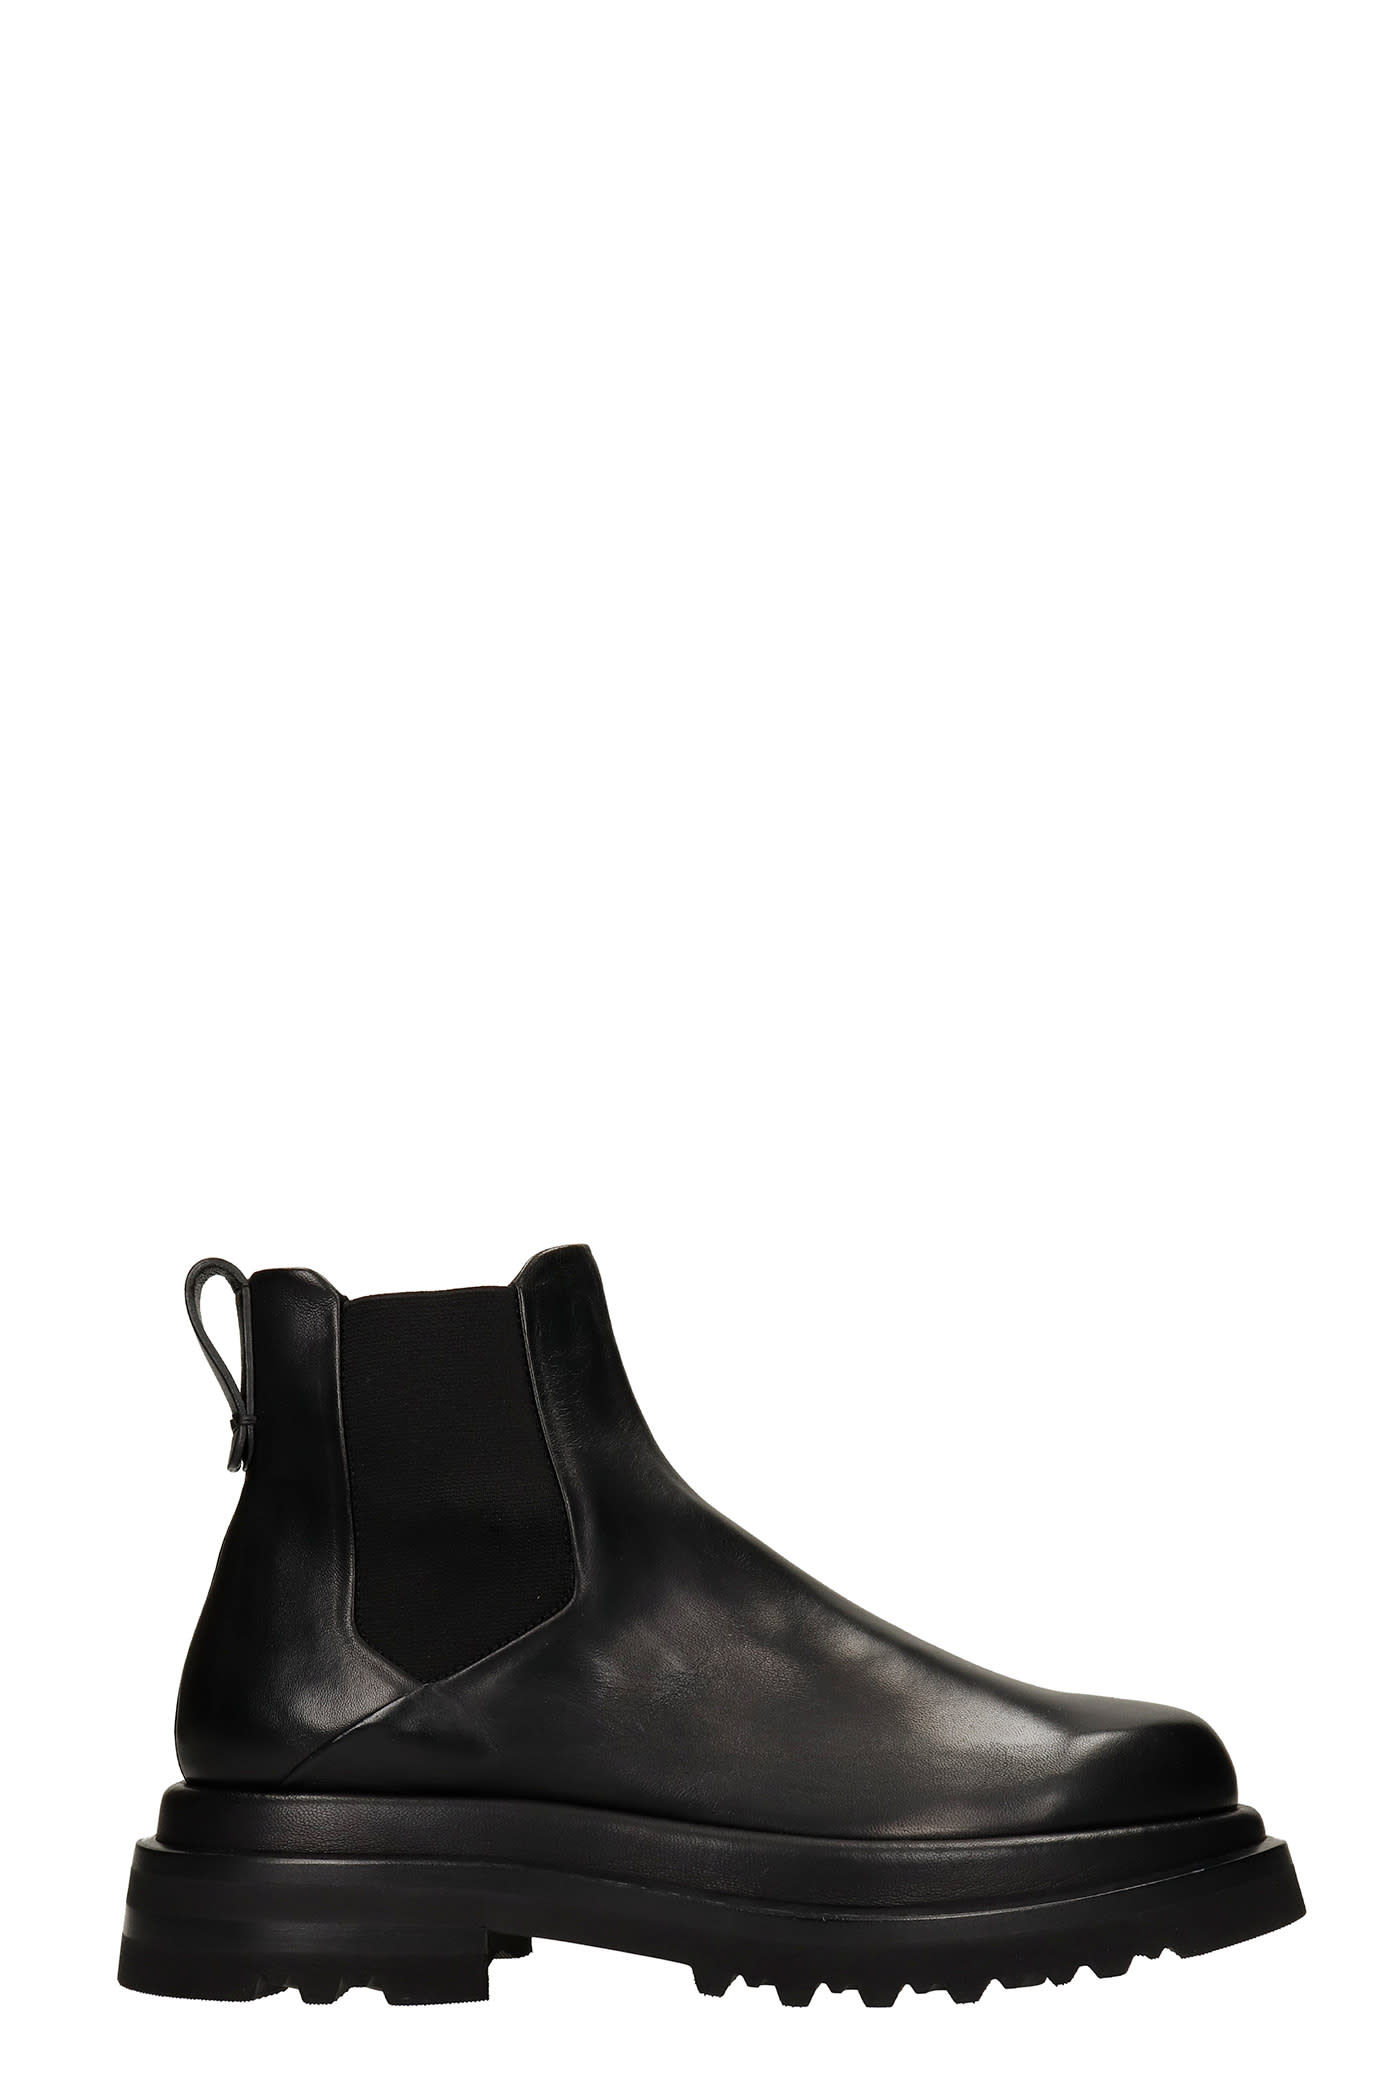 Giorgio Armani Combat Boots In Black Leather